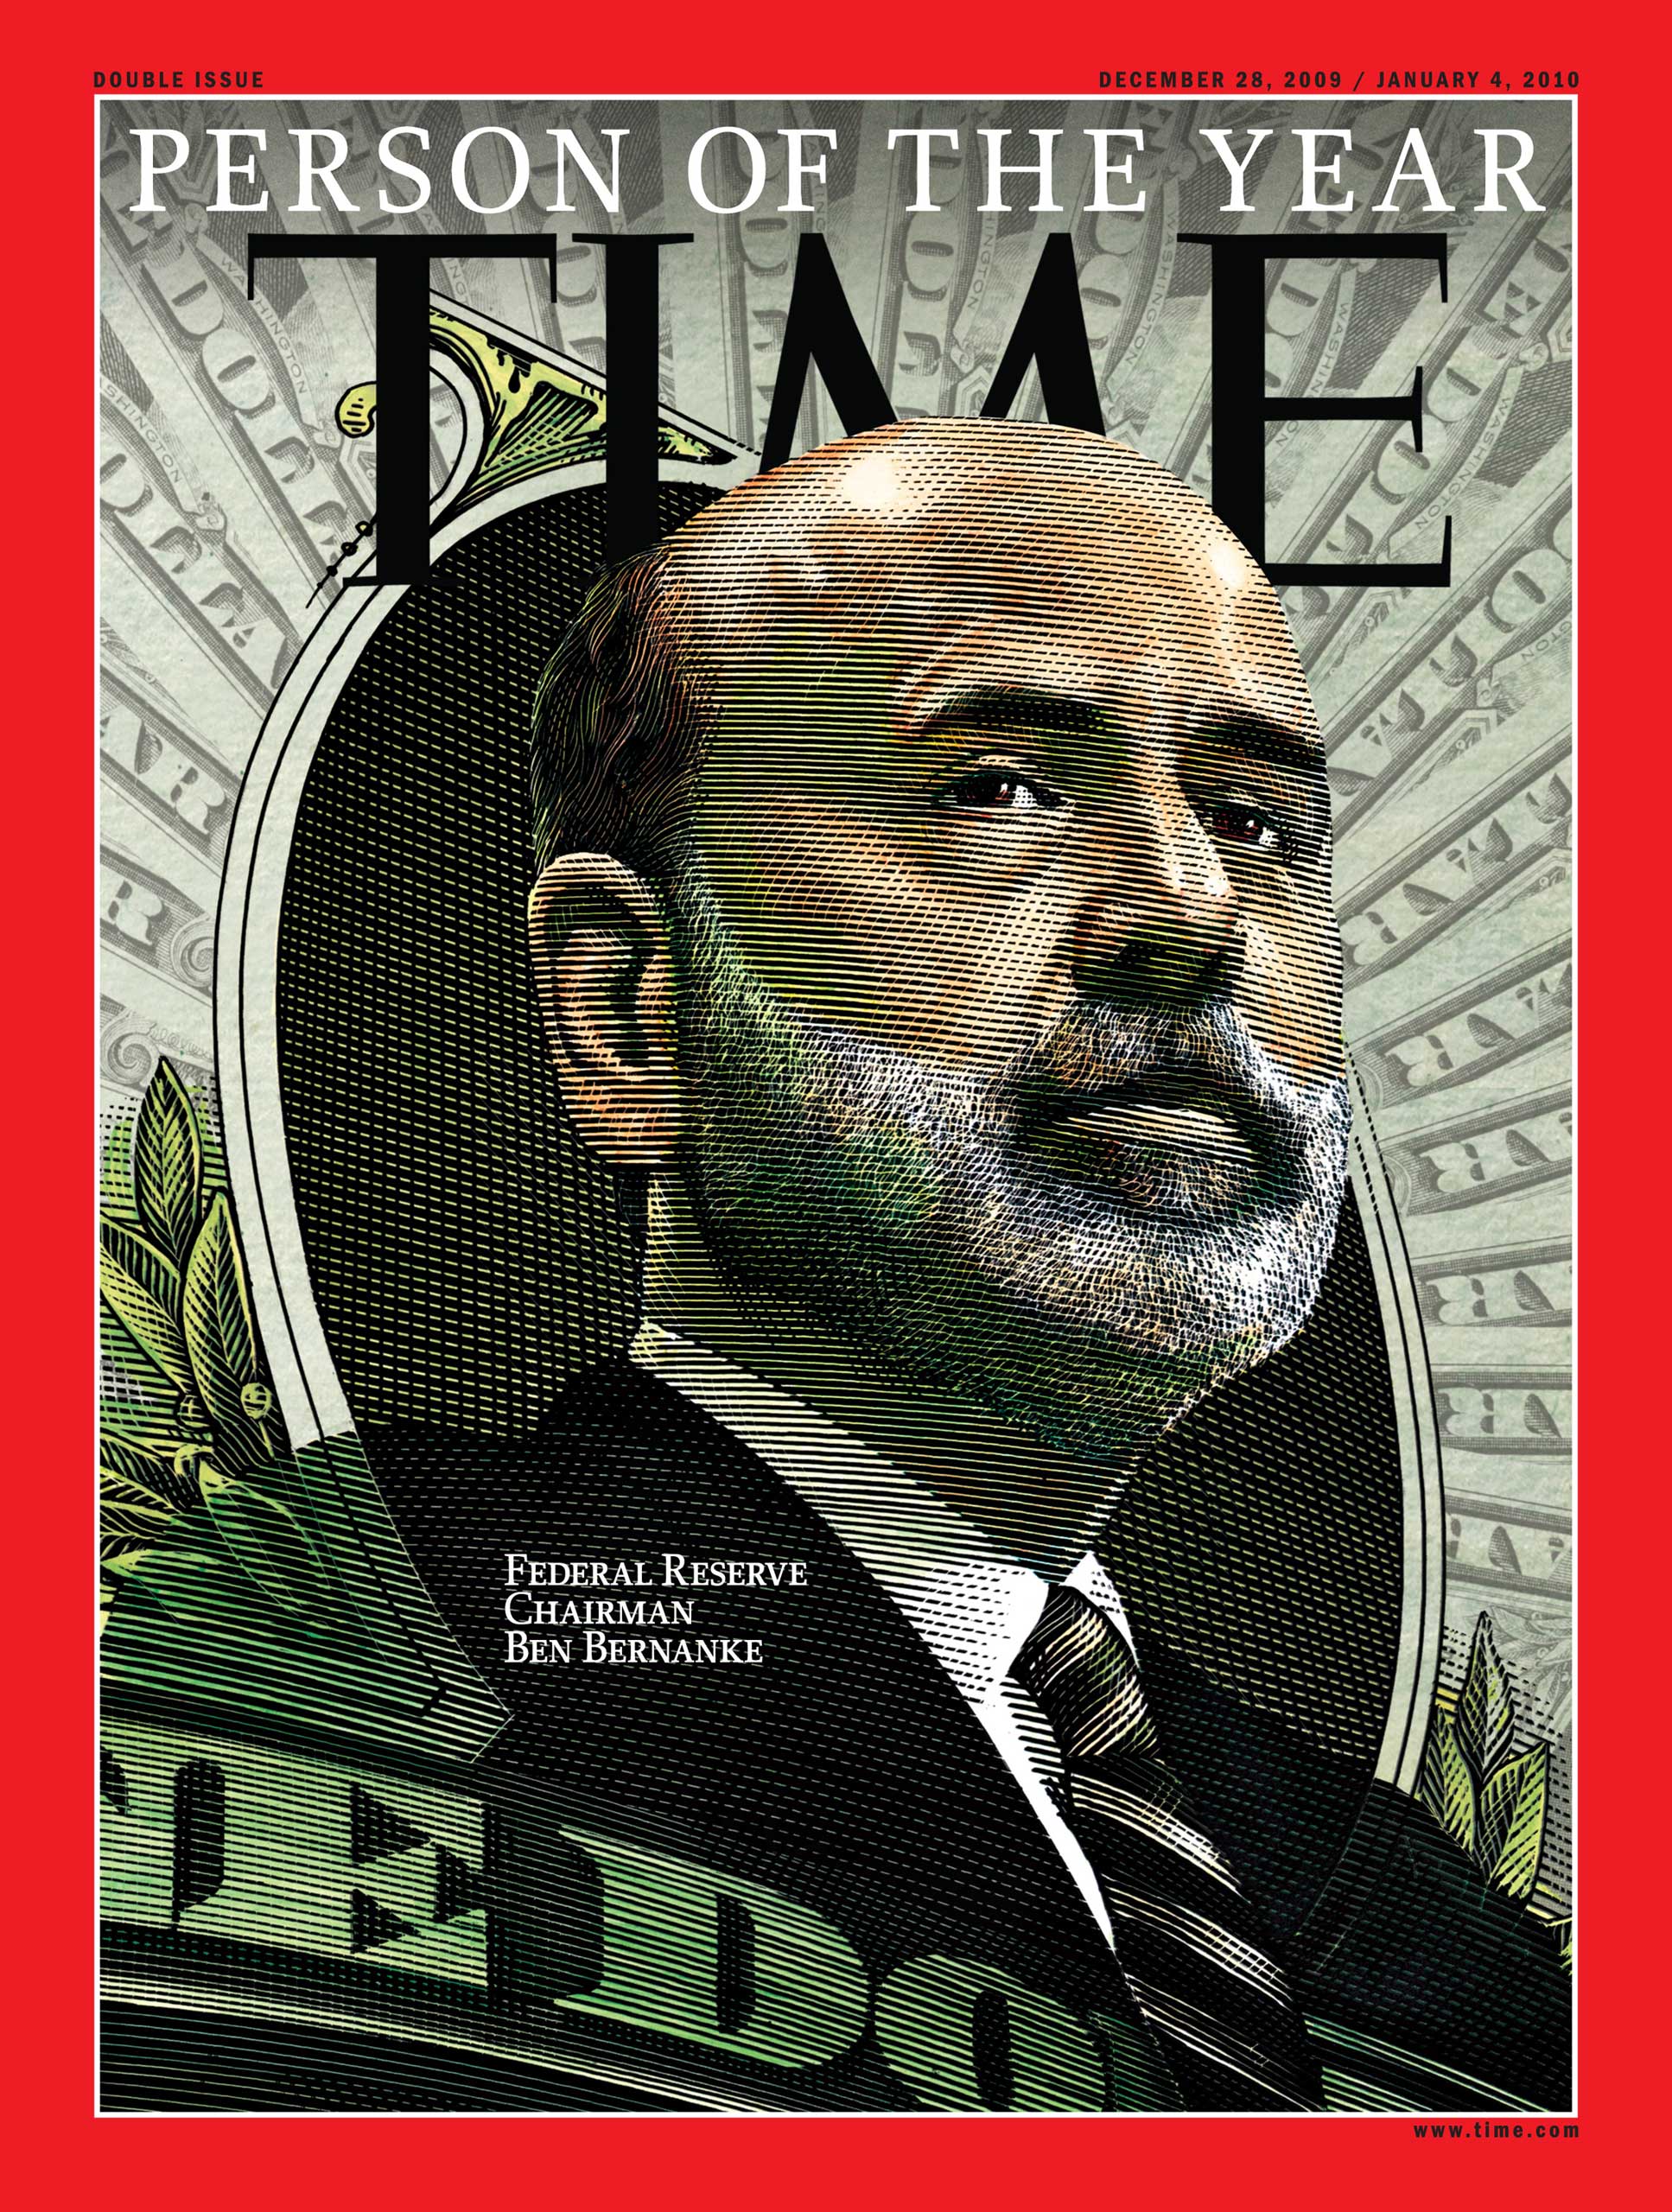 2009: Ben Bernanke